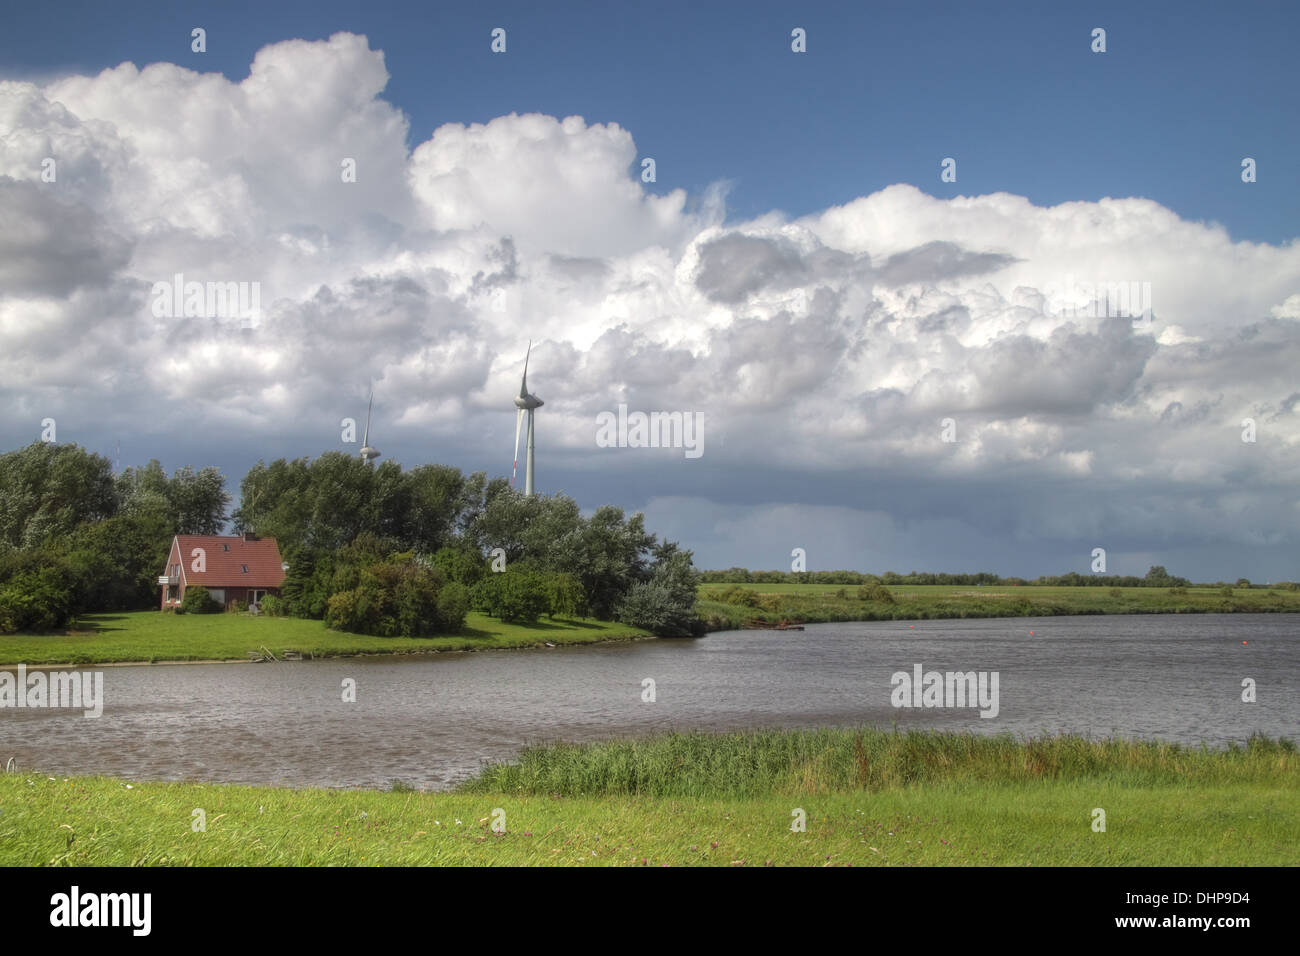 Farm and wind turbine in East Frisia Stock Photo